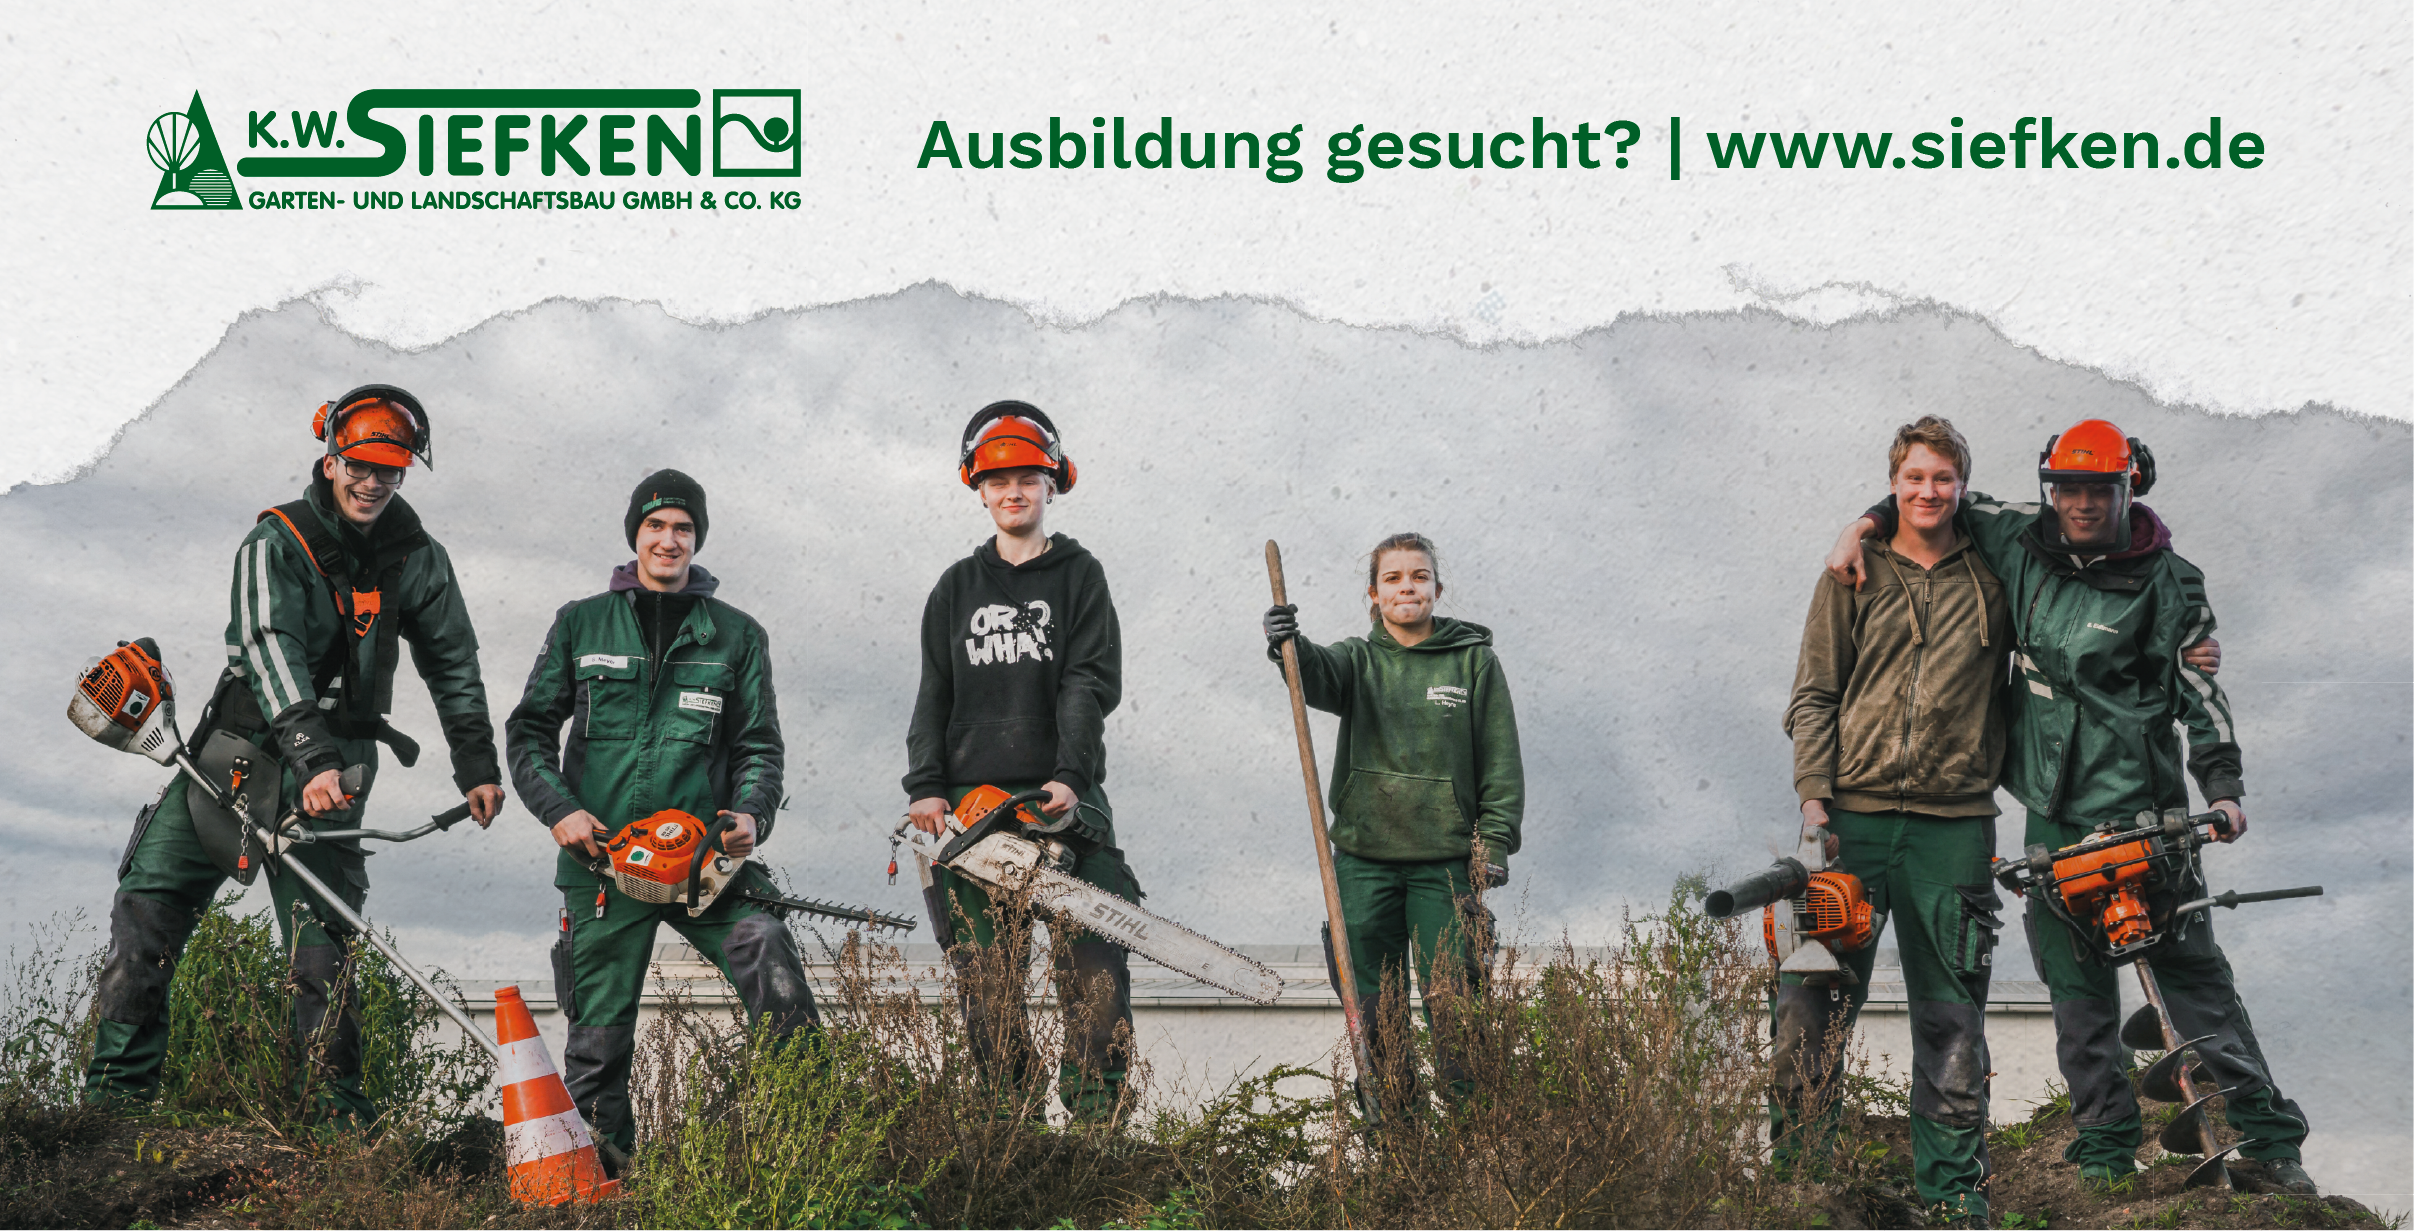 K.W. Siefken GmbH & Co. KG <br />Garten- und Landschaftsbau